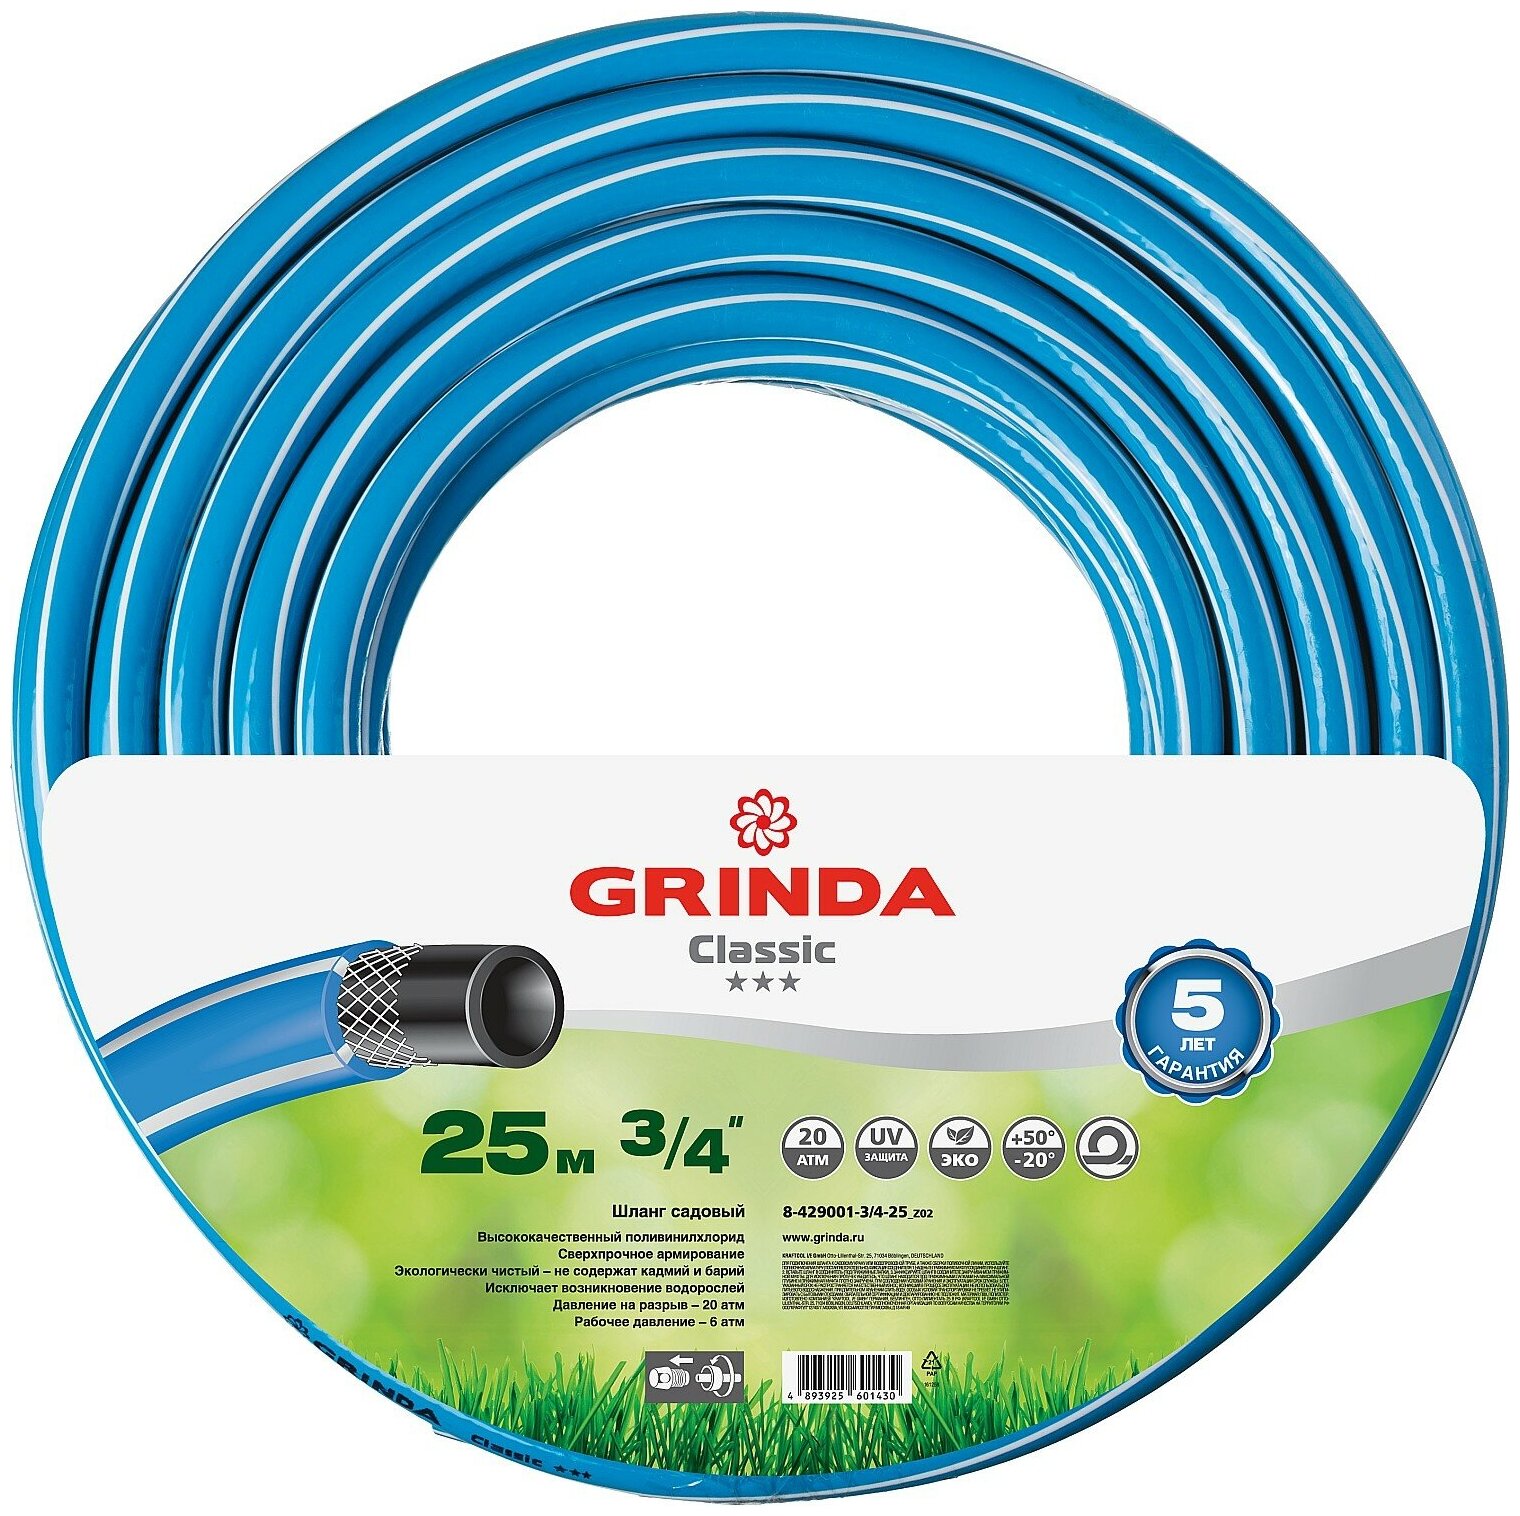 GRINDA Classic, 3/4″, 25 м, 20 атм, трёхслойный, армированный, сетчатое армирование полиамидной нитью, поливочный шланг (8-429001-3/4-25)